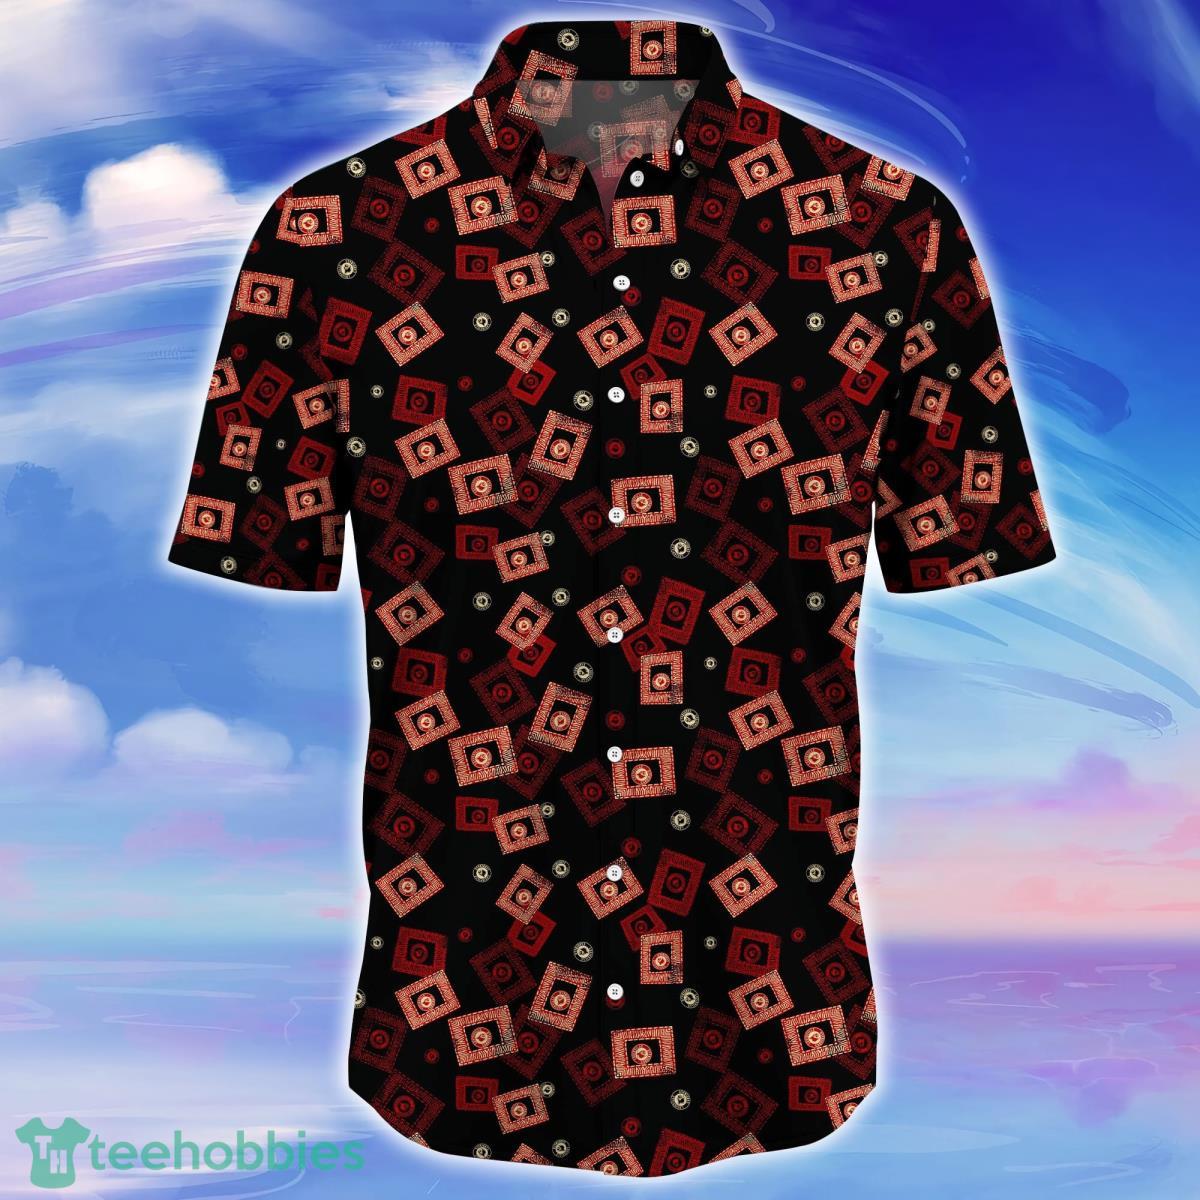 Red Shirt Louisville Short-Sleeve Hawaiian Shirt For Fan Men Full Size  S-5XL